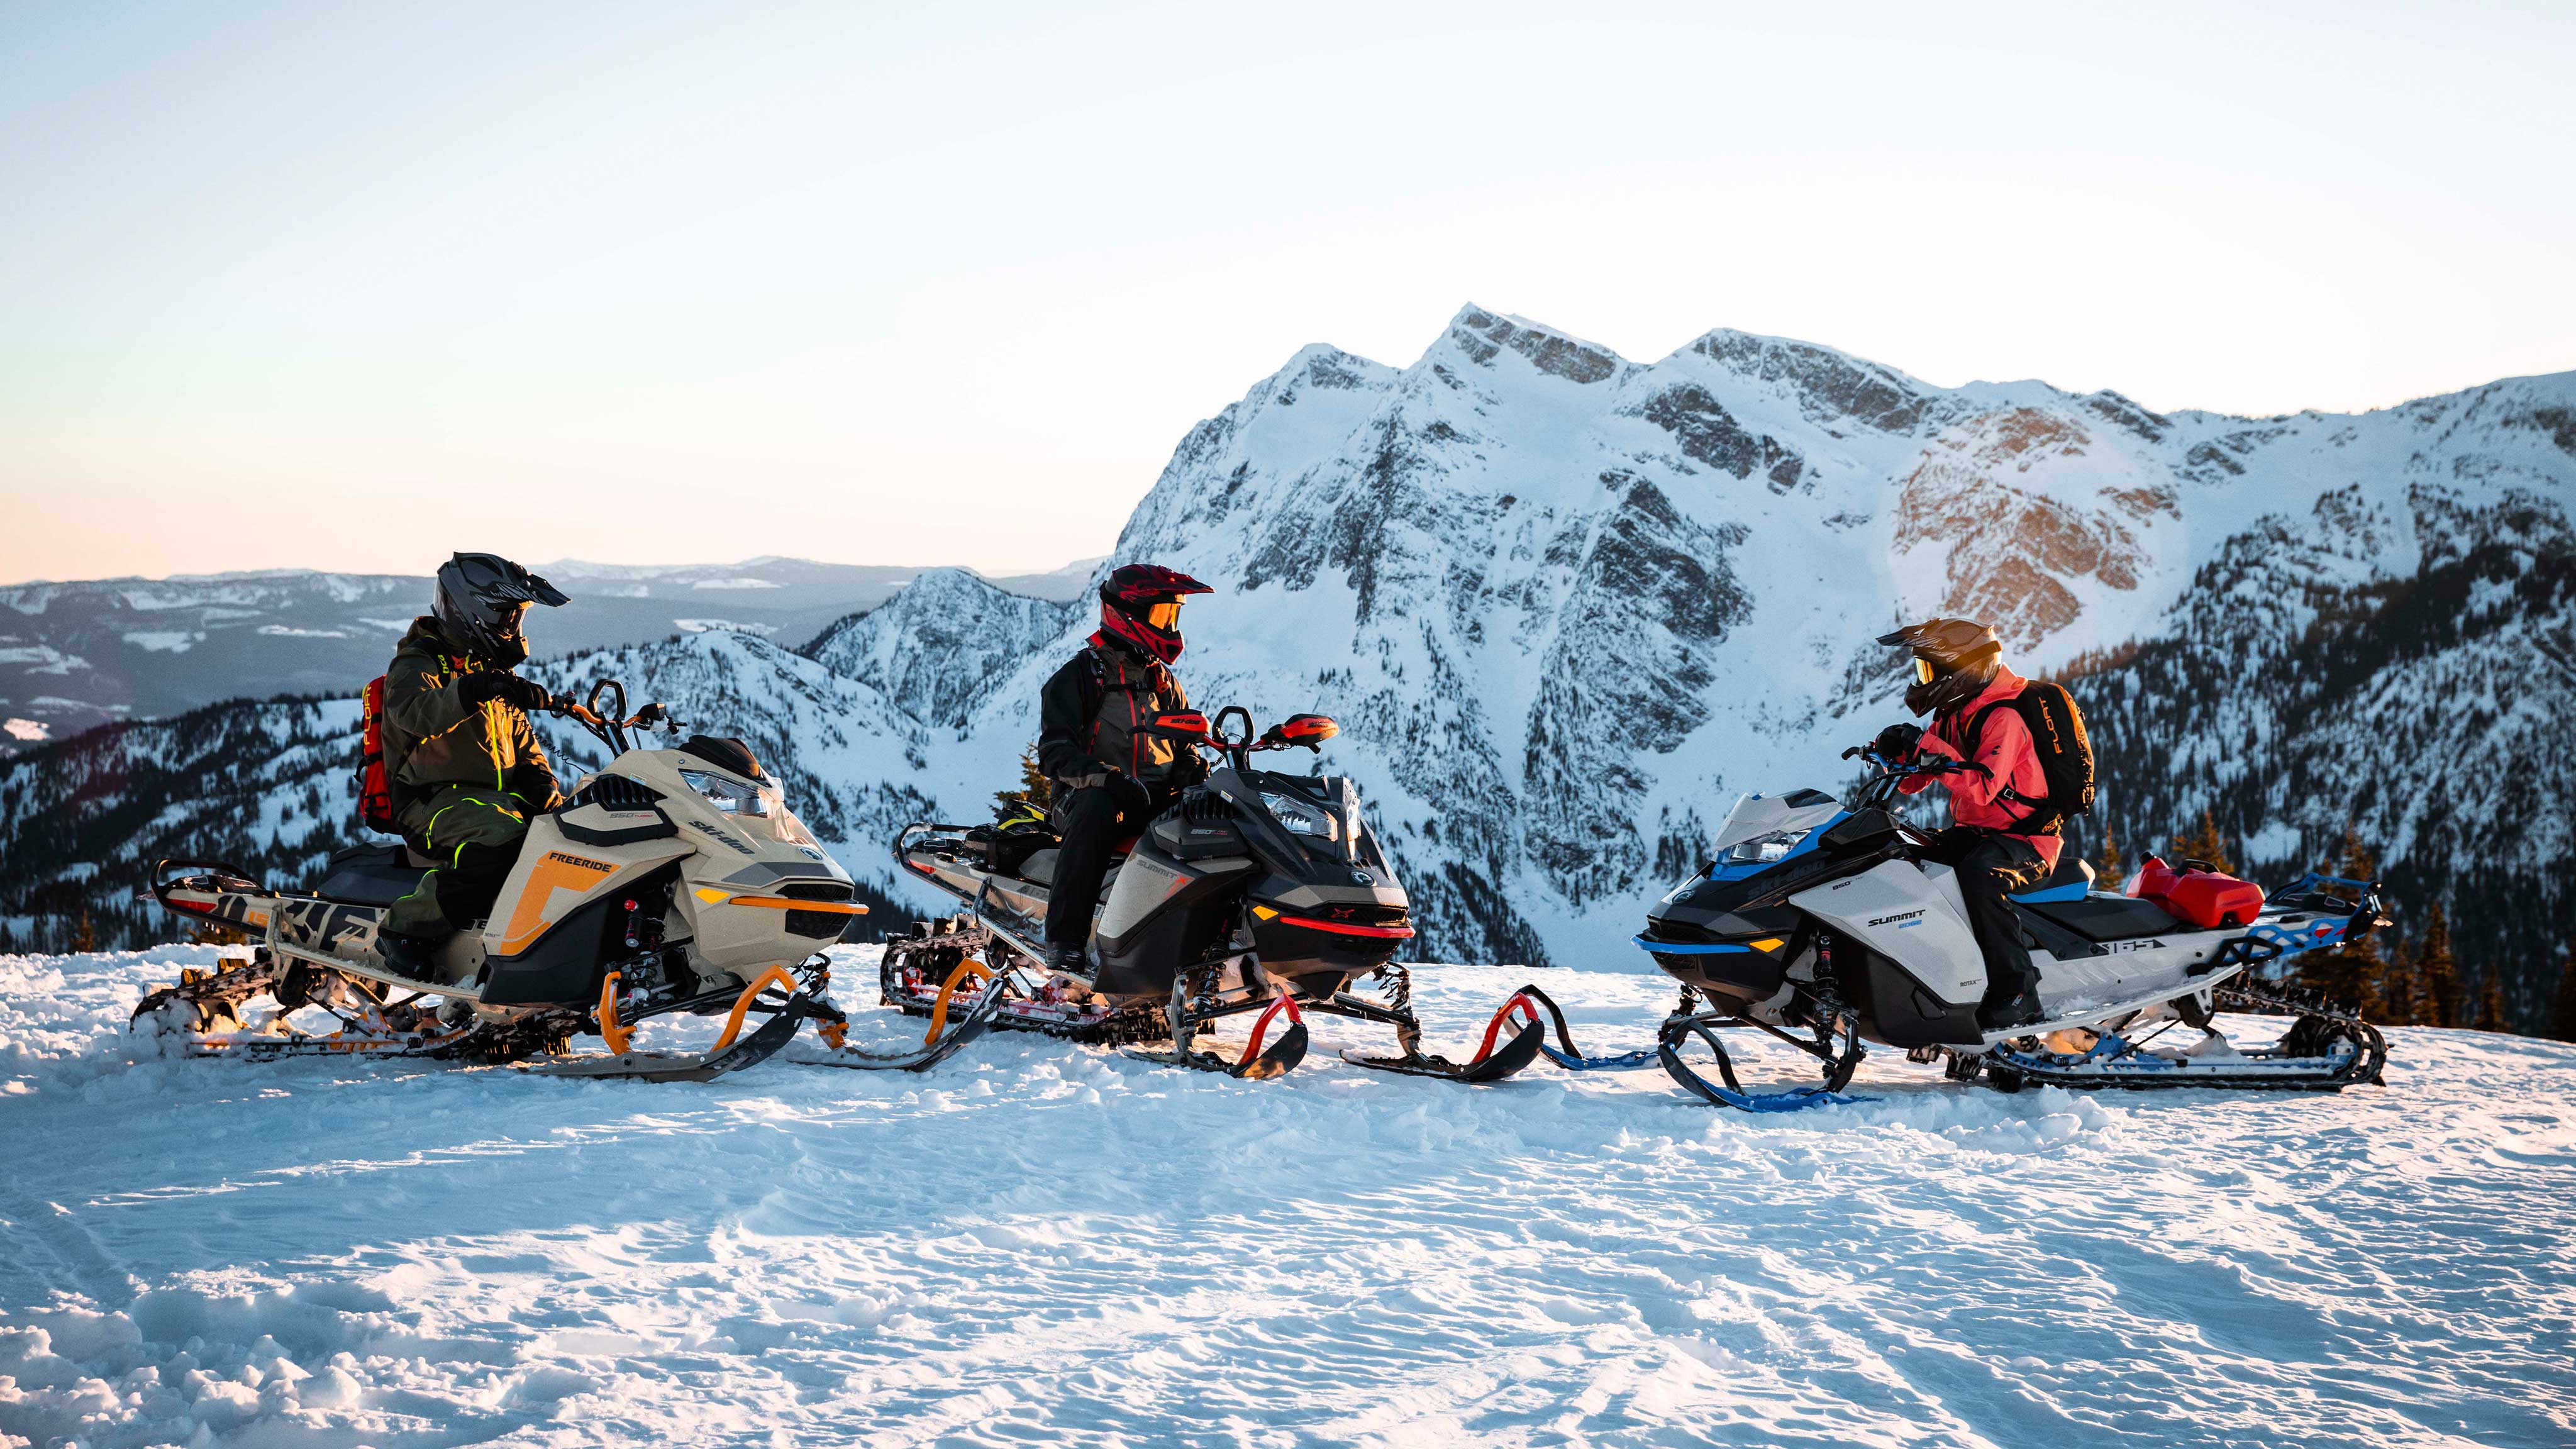 Family riding Ski-Doo snowmobiles